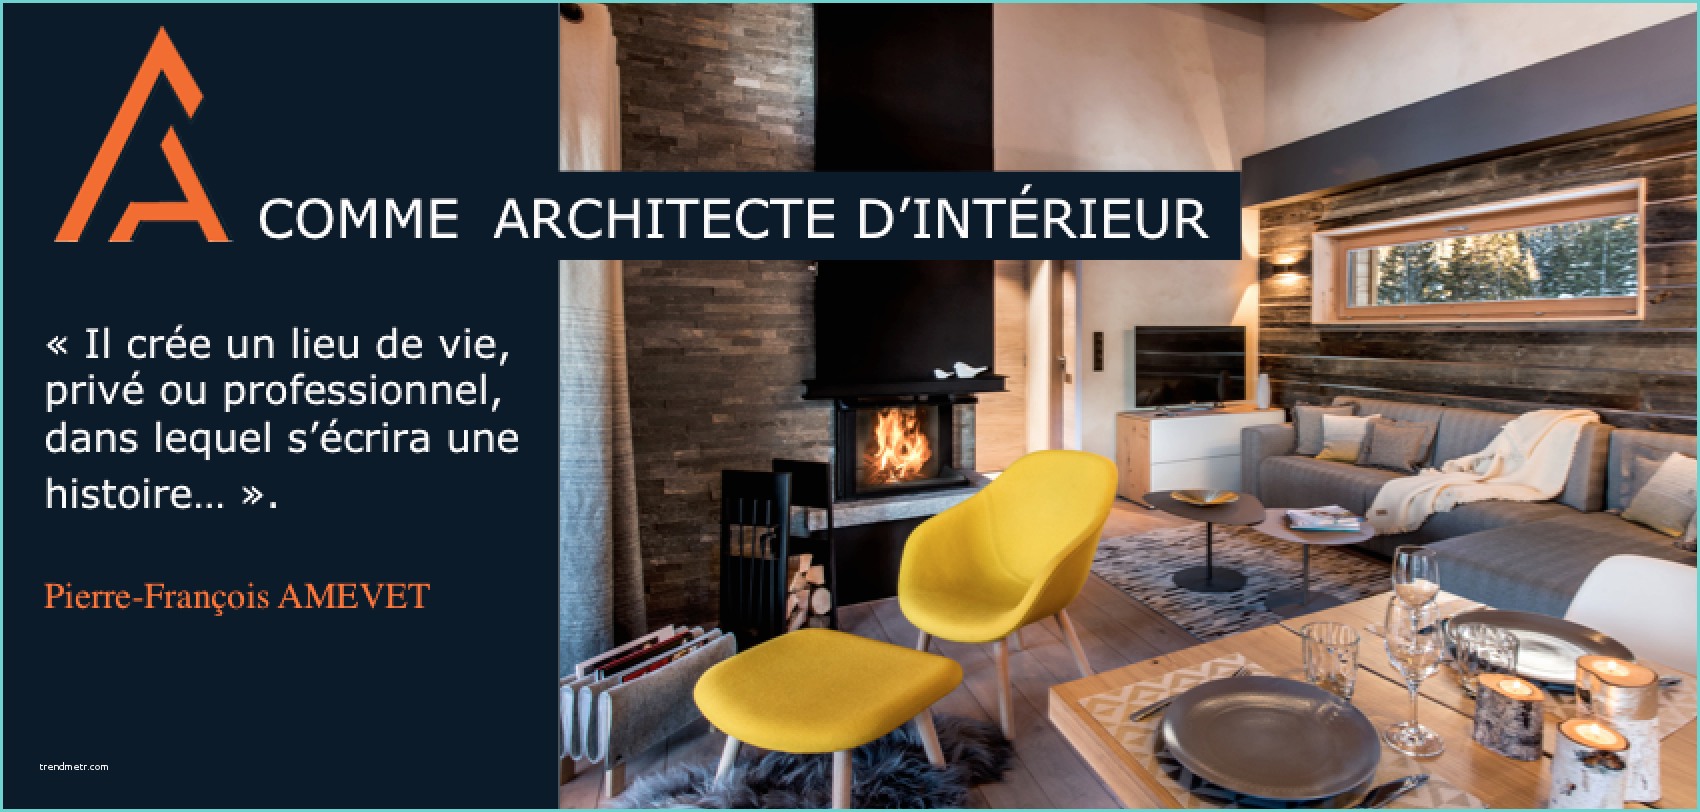 Architecte Interieur Savoie 73 Amevet Architecte Interieur Savoie Rhone Alpes Chalet